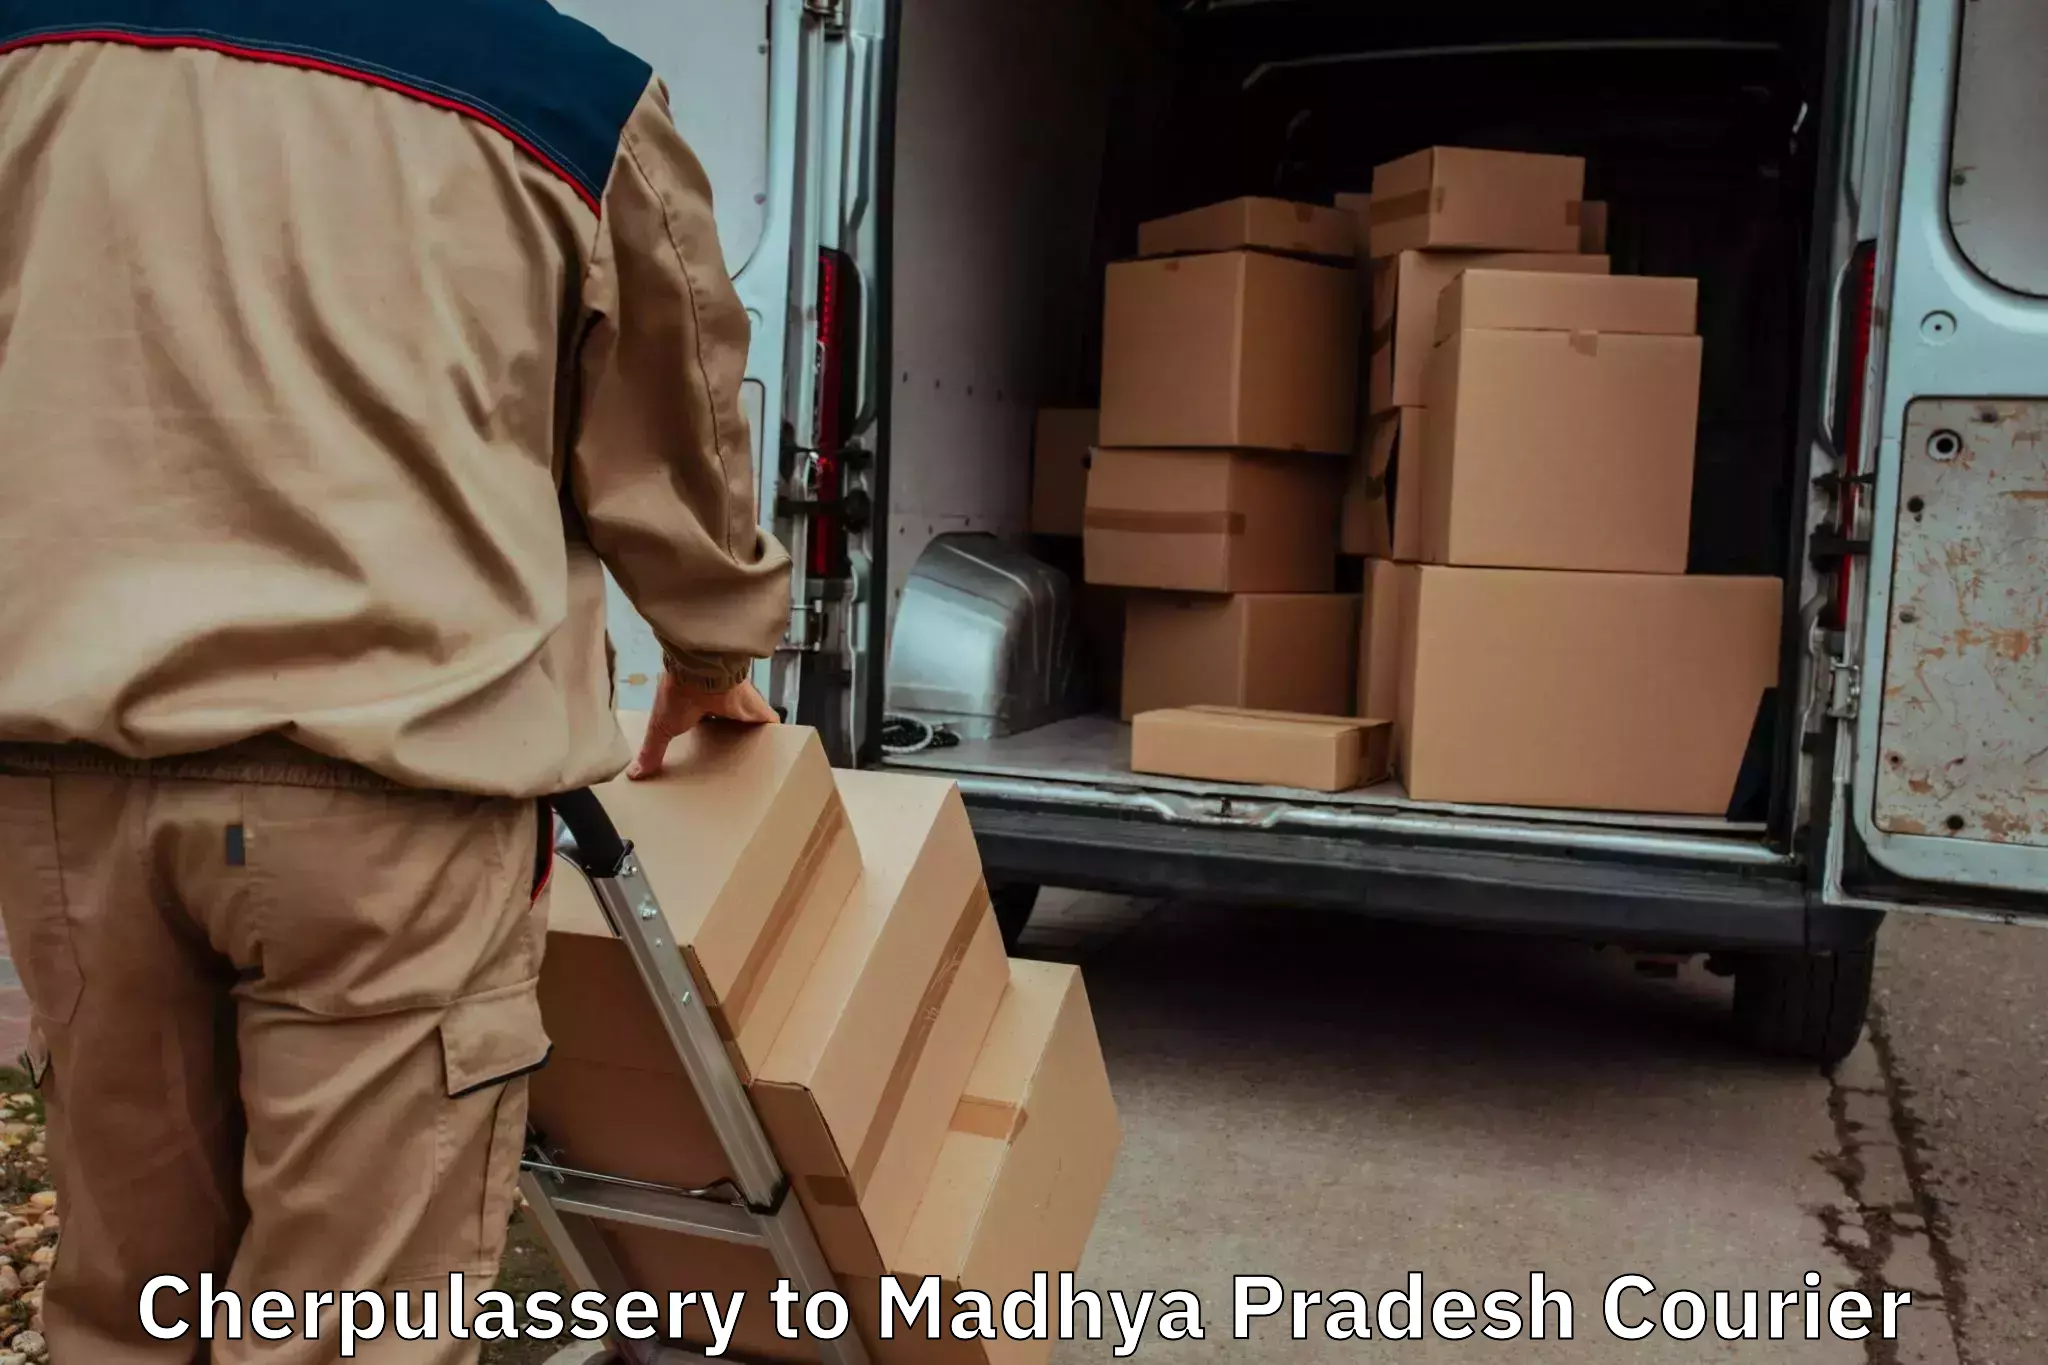 Furniture transport professionals Cherpulassery to Madhya Pradesh